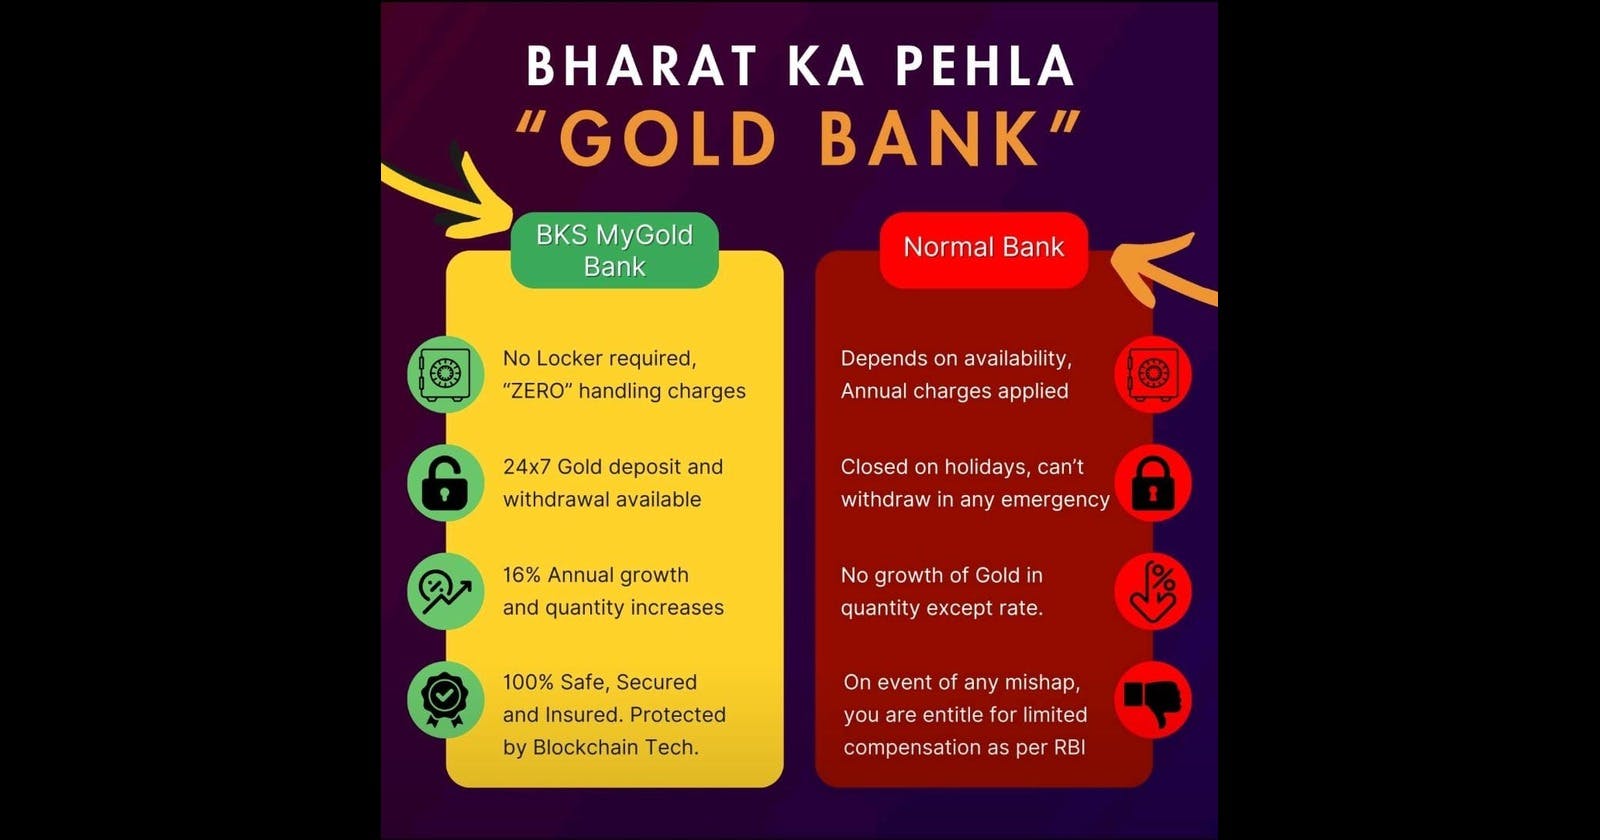 Bharat ka pehla Gold Bank